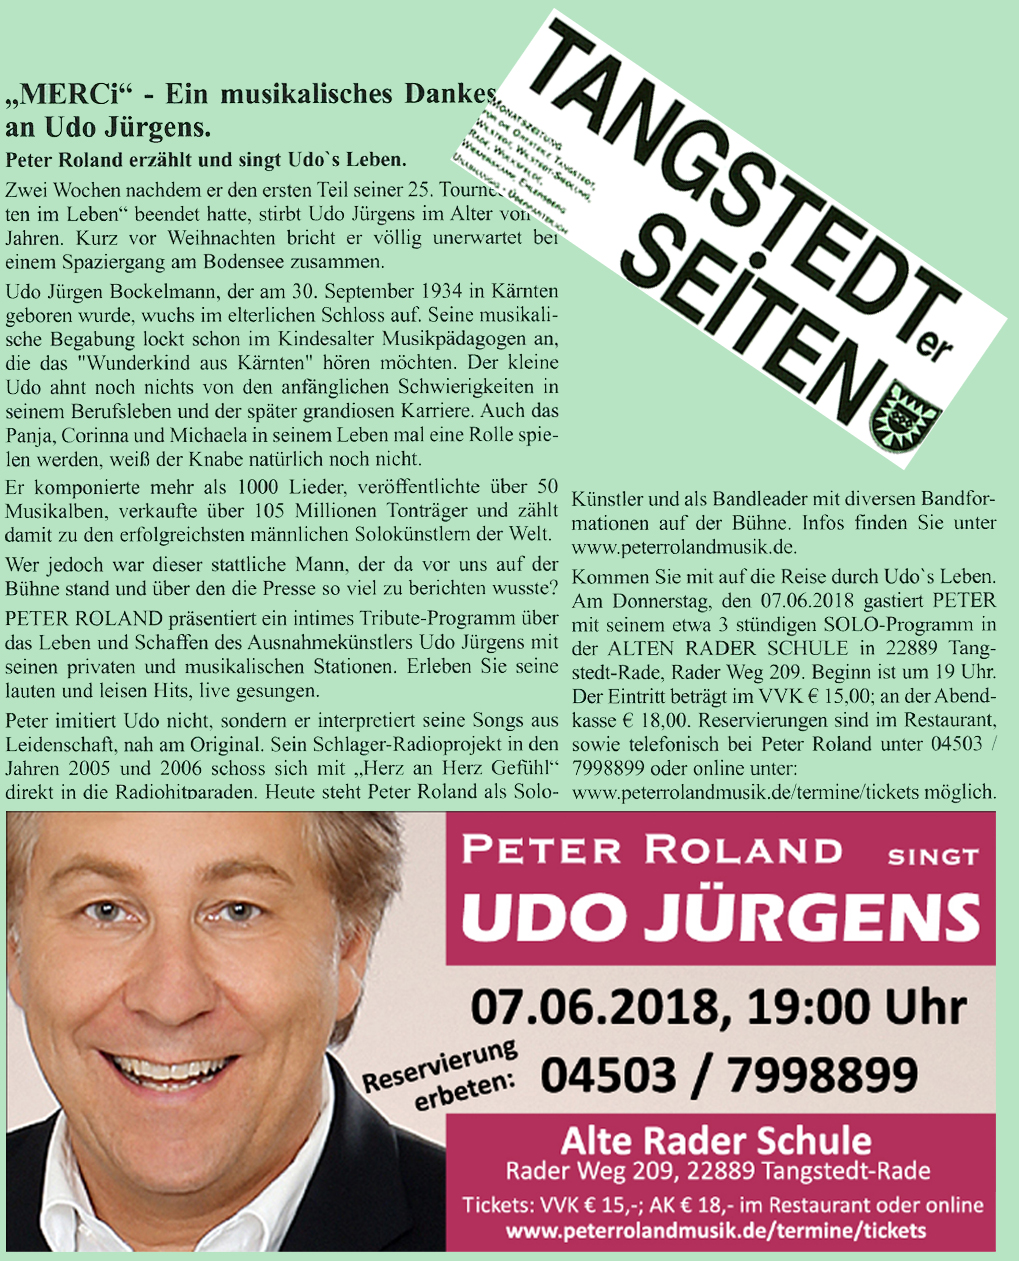 Peter Roland singt Udo Jürgens, Tangstedter Seiten